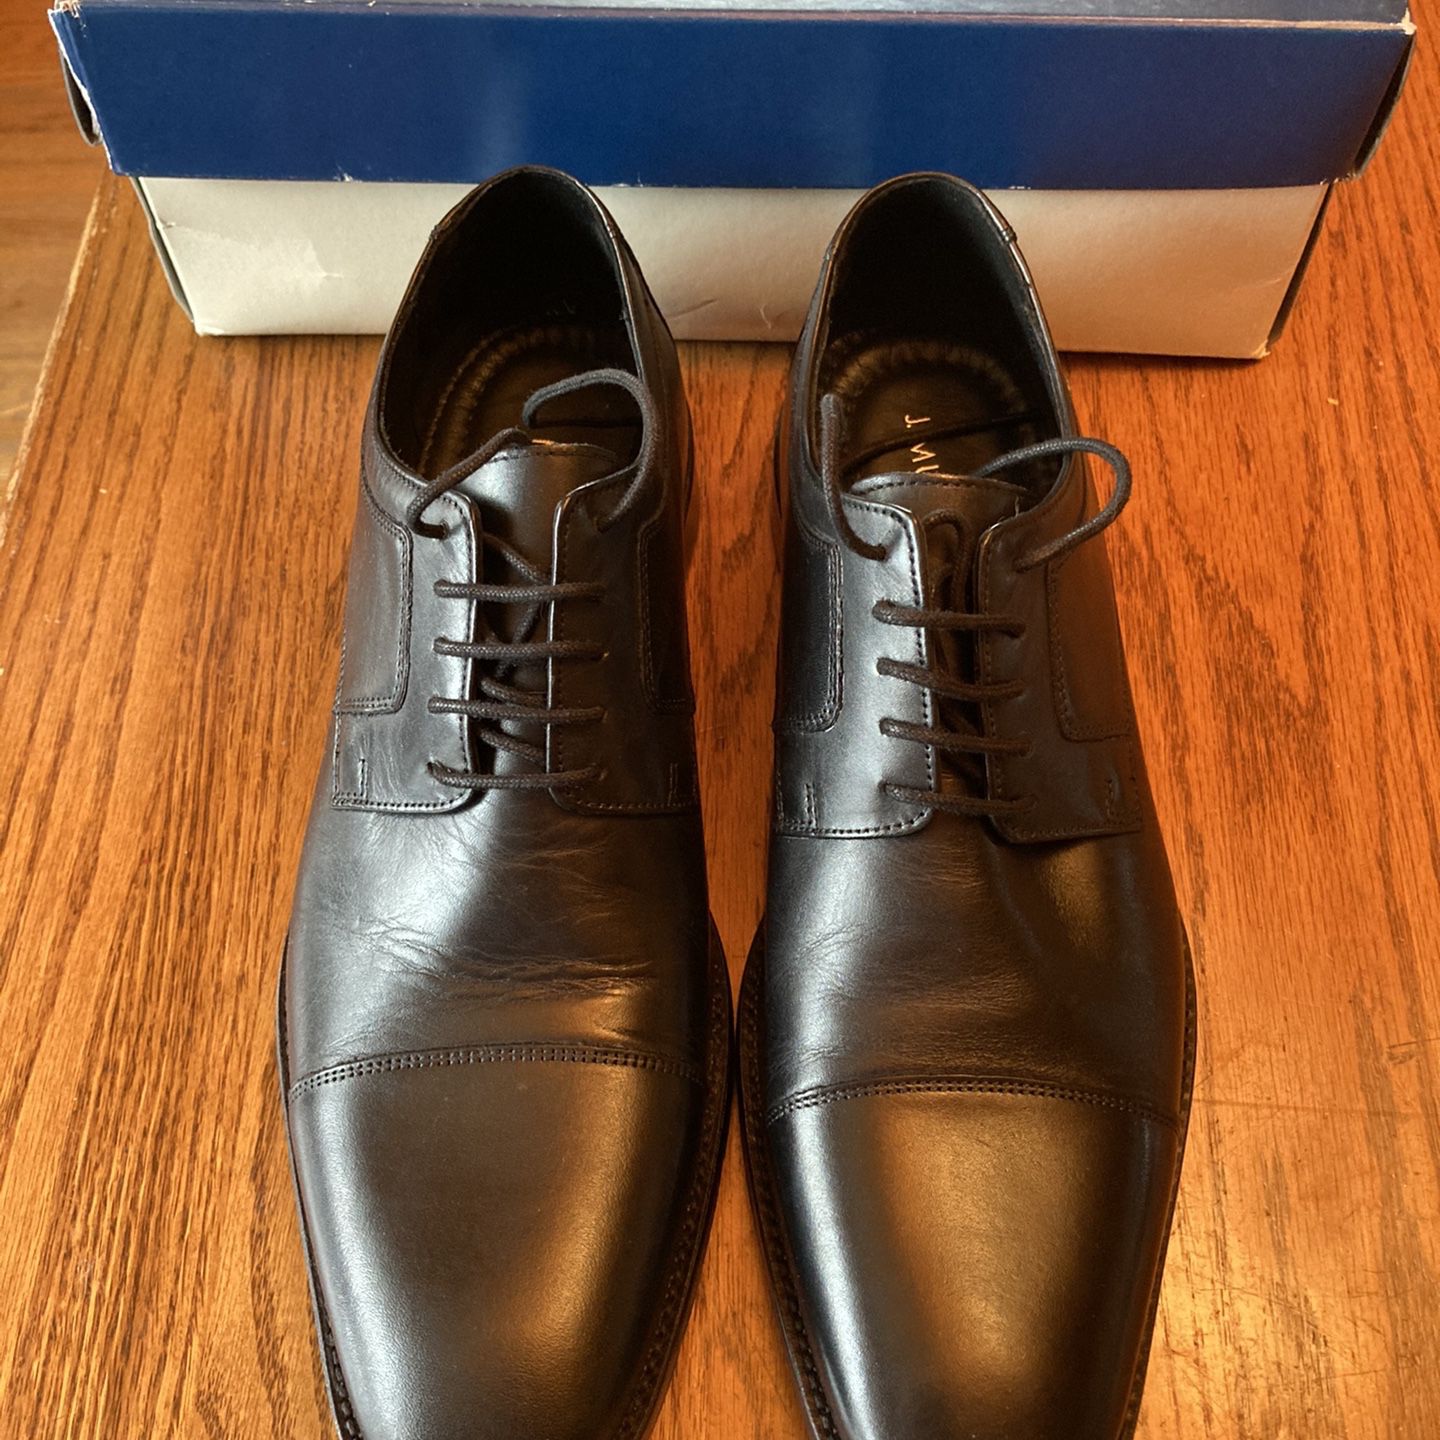 Men’s Black Dress Shoes - Size 12